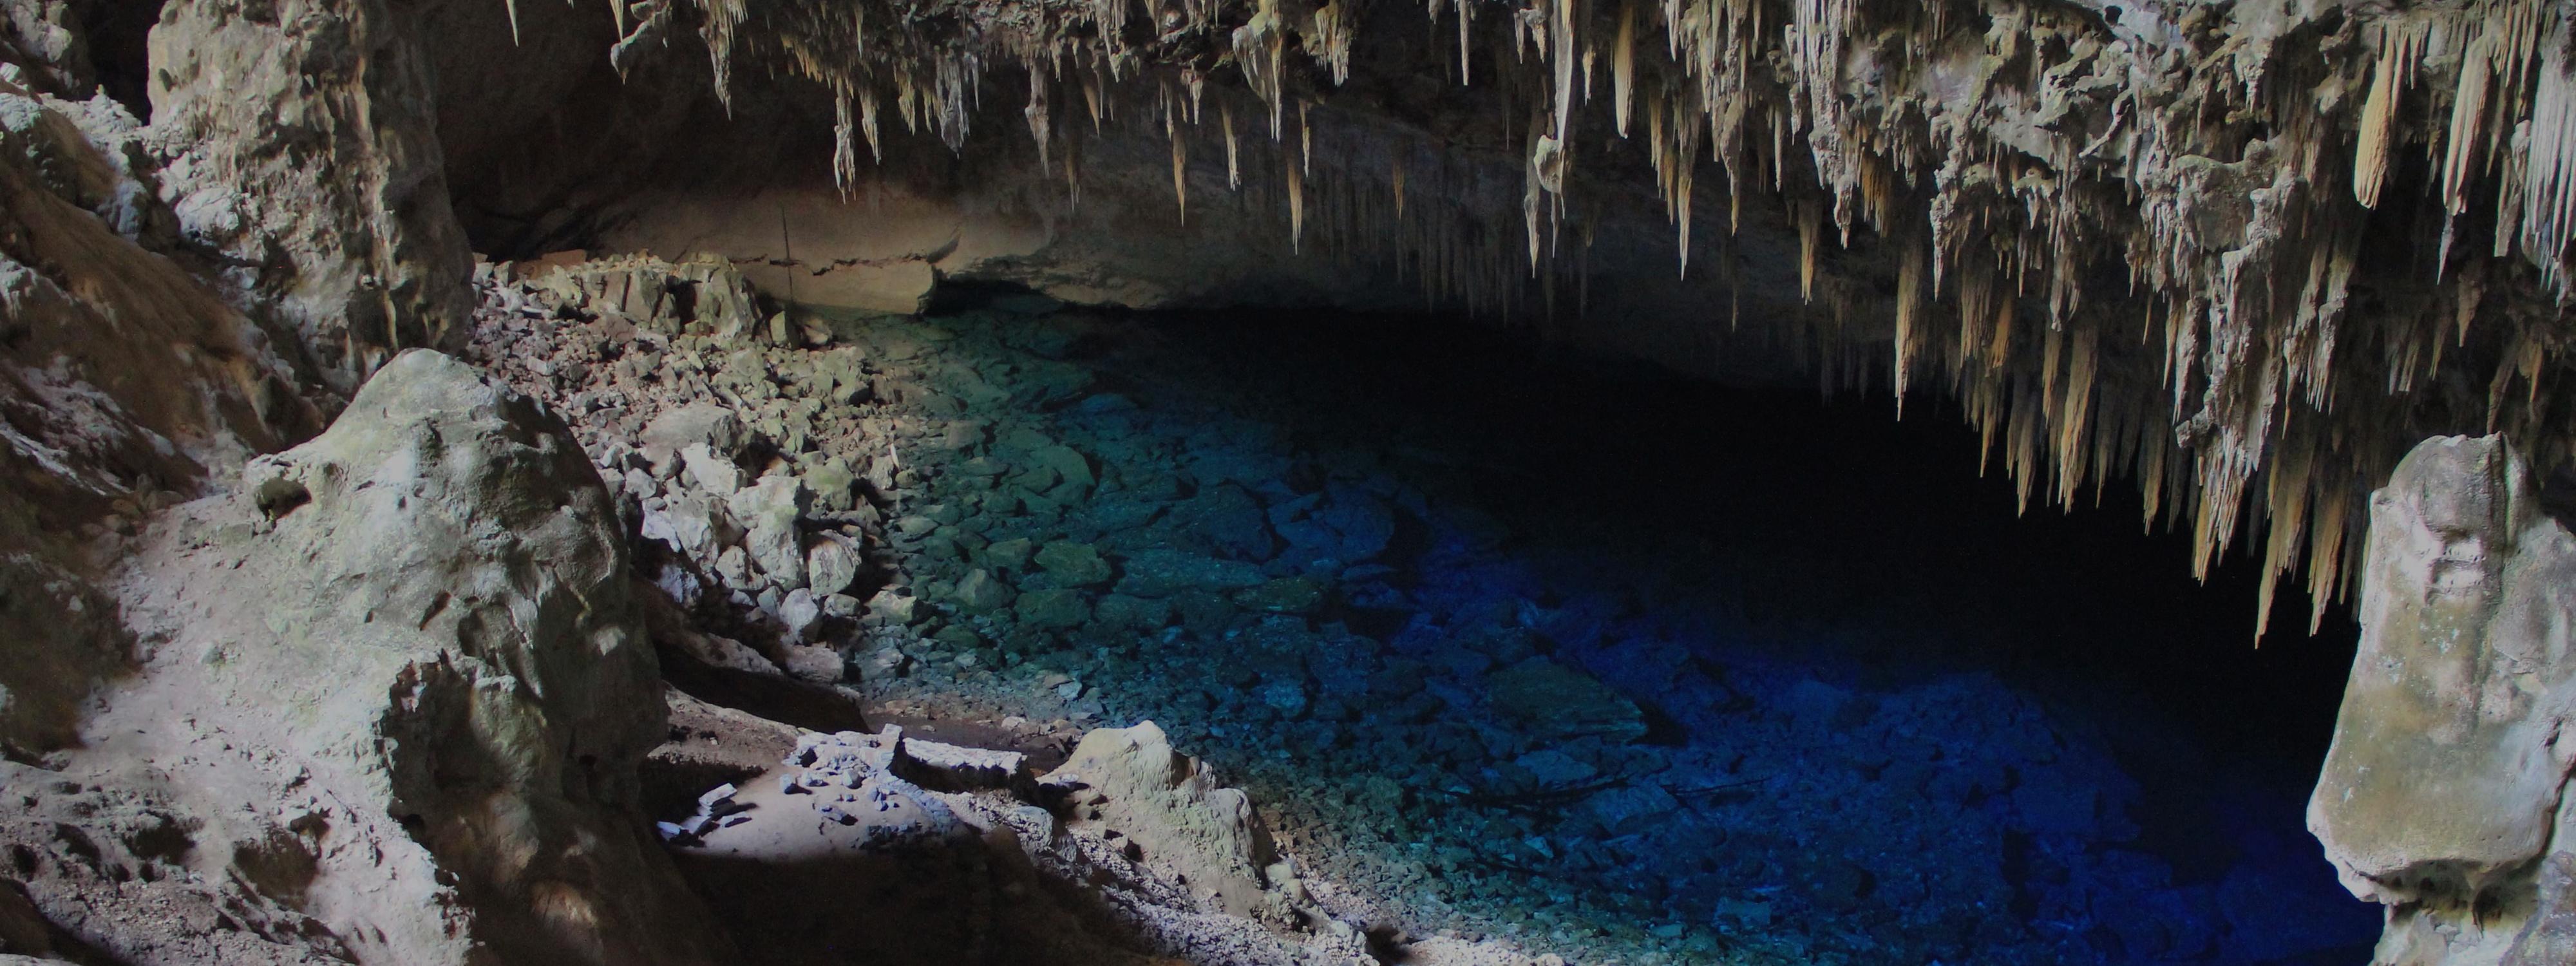 Lac souterrain dans une grotte